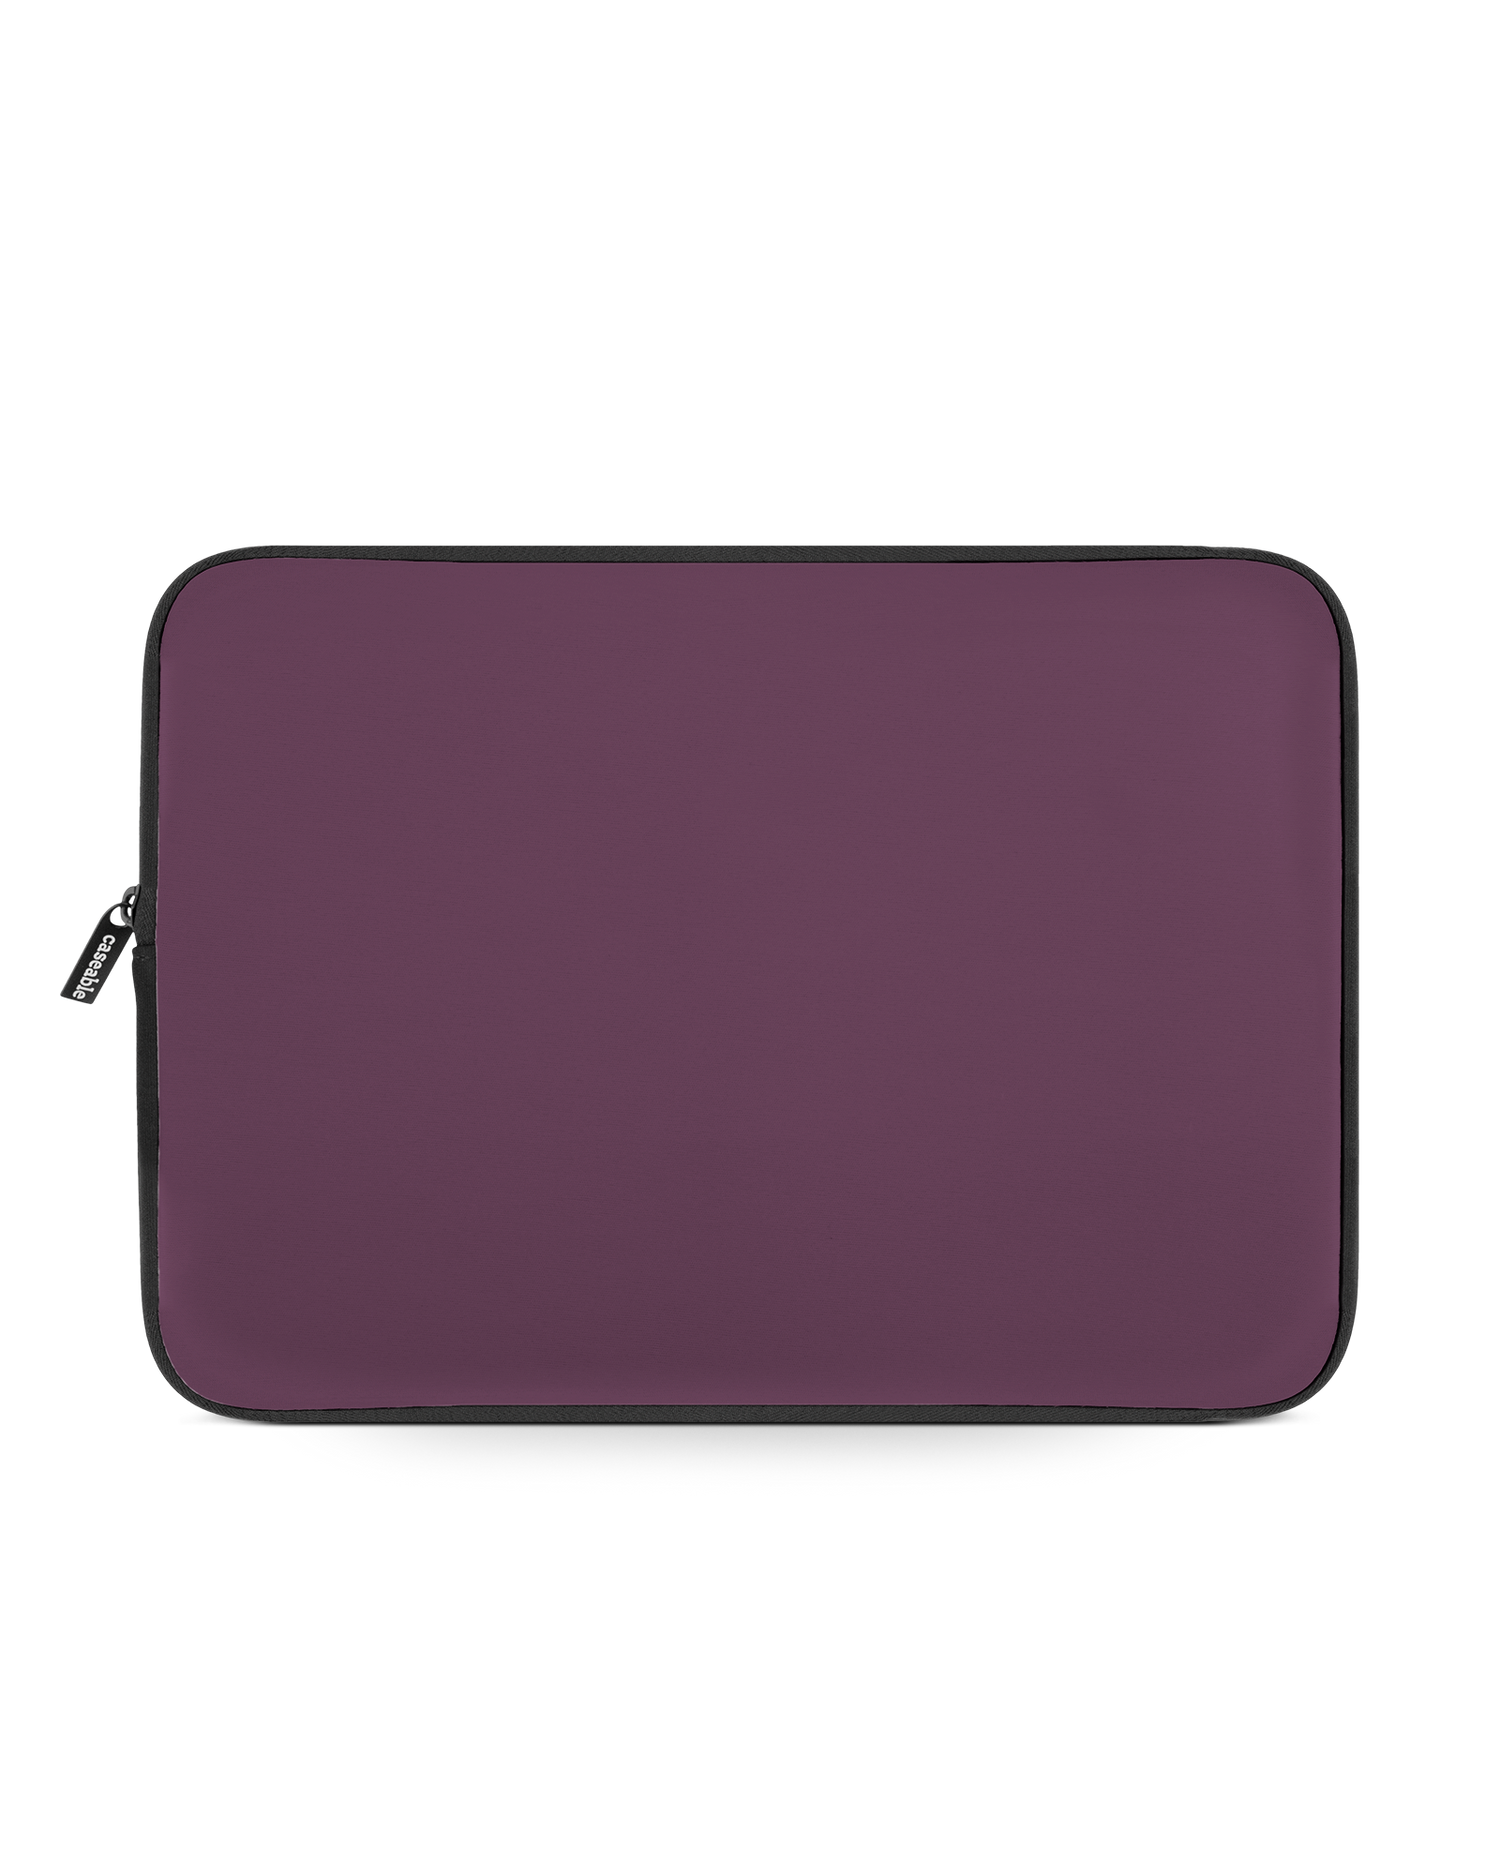 PLUM Laptop Case 13-14 inch: Front View